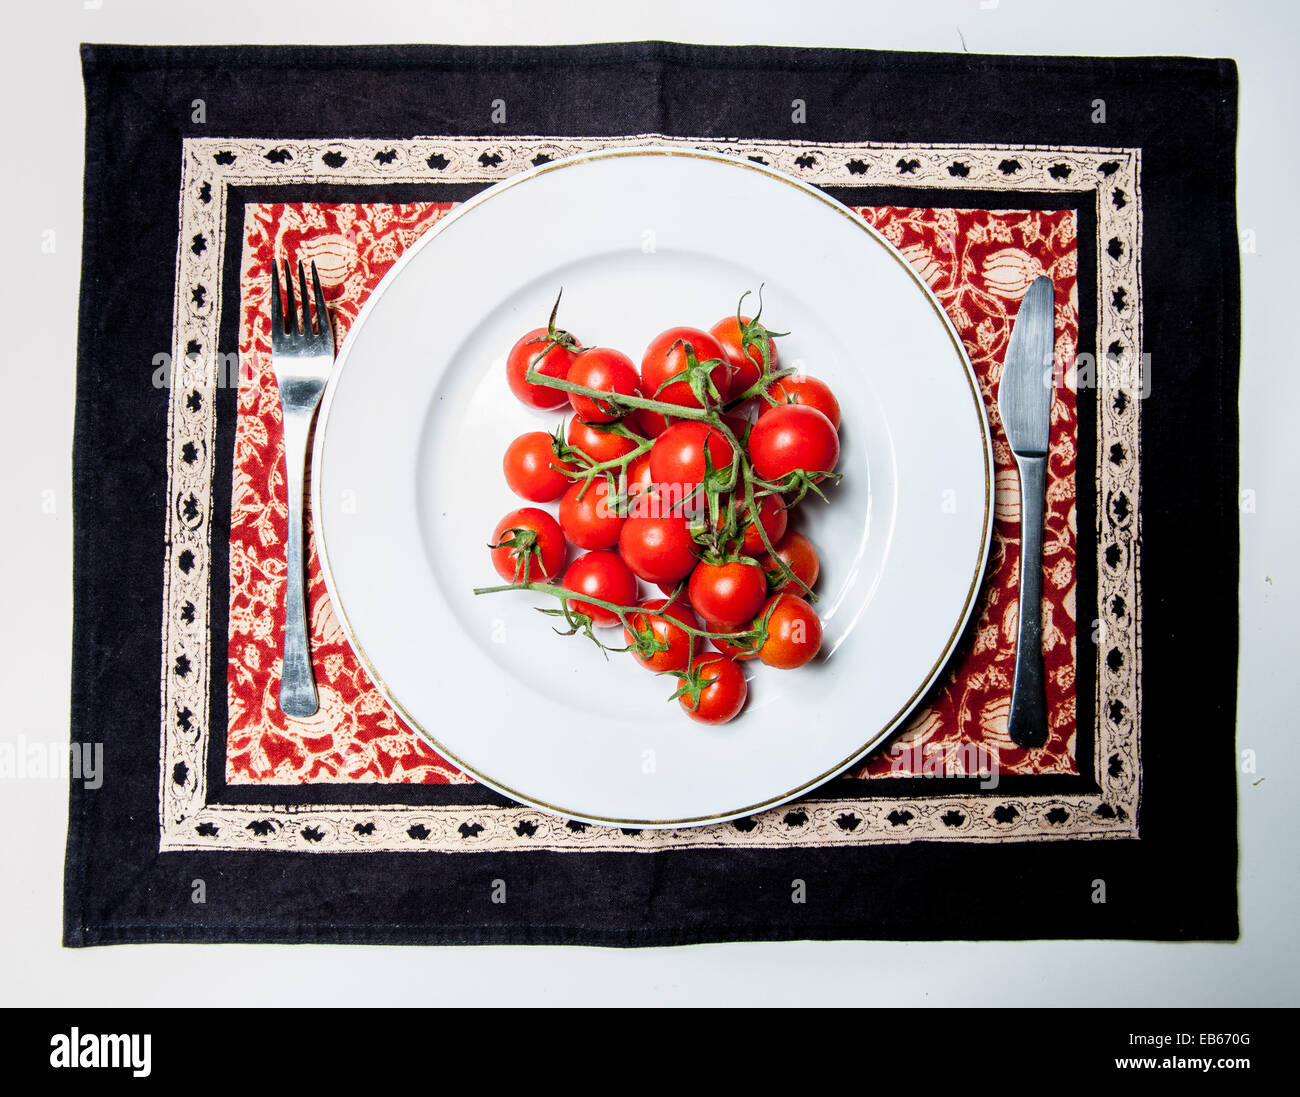 Rohe Tomaten Pachino-Klasse auf einem weißen Teller mit einer Gabel und einem Messer Stockfoto